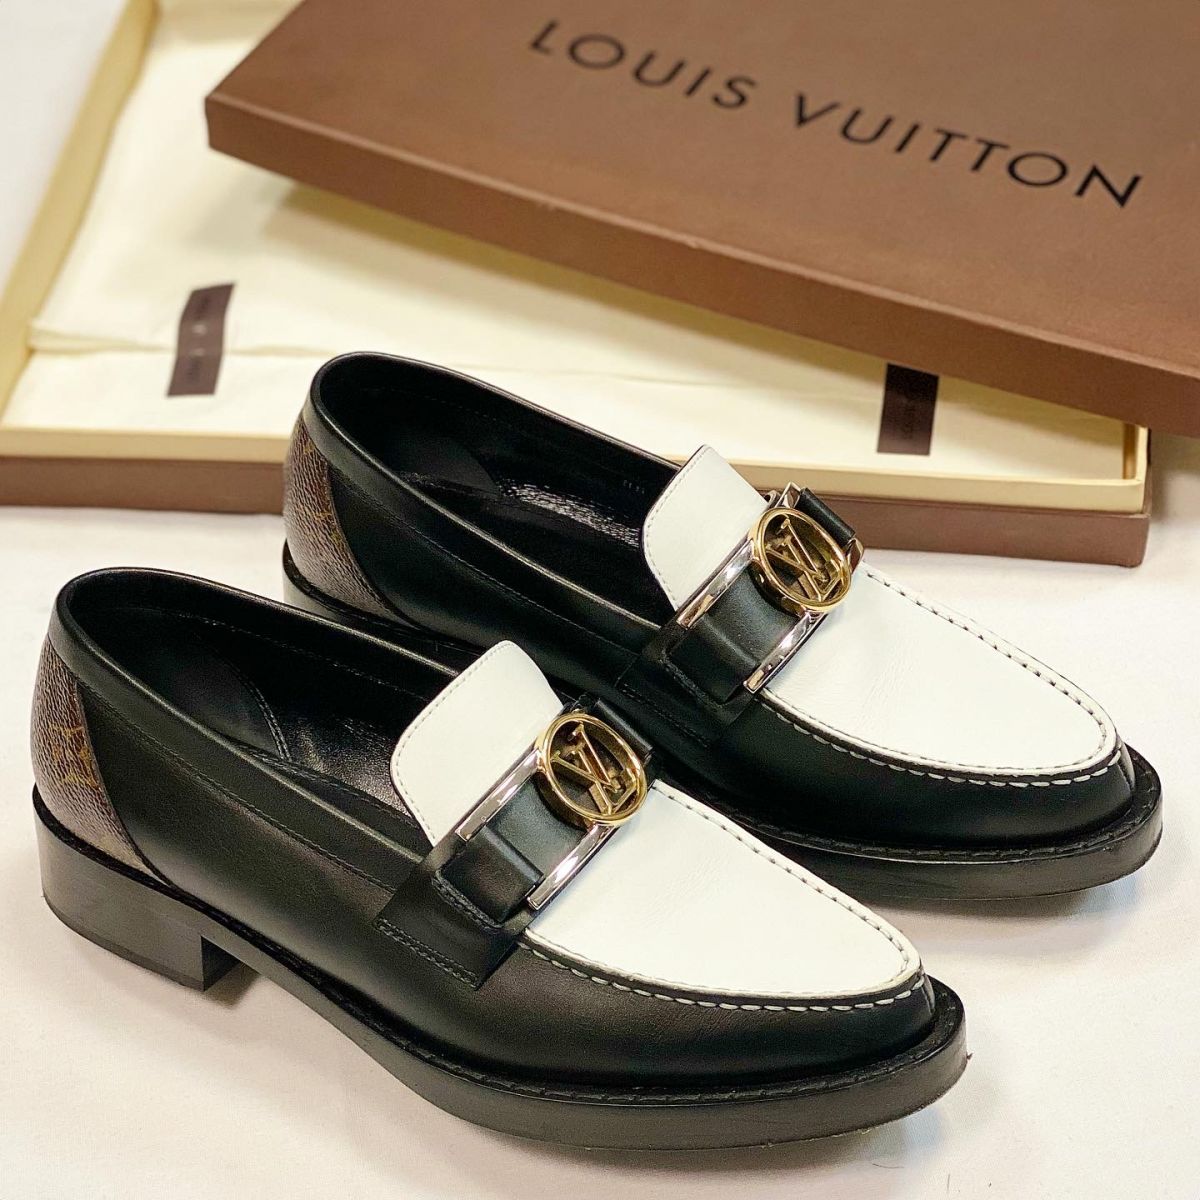 Лоферы Louis Vuitton размер 38 цена 30 770 руб 